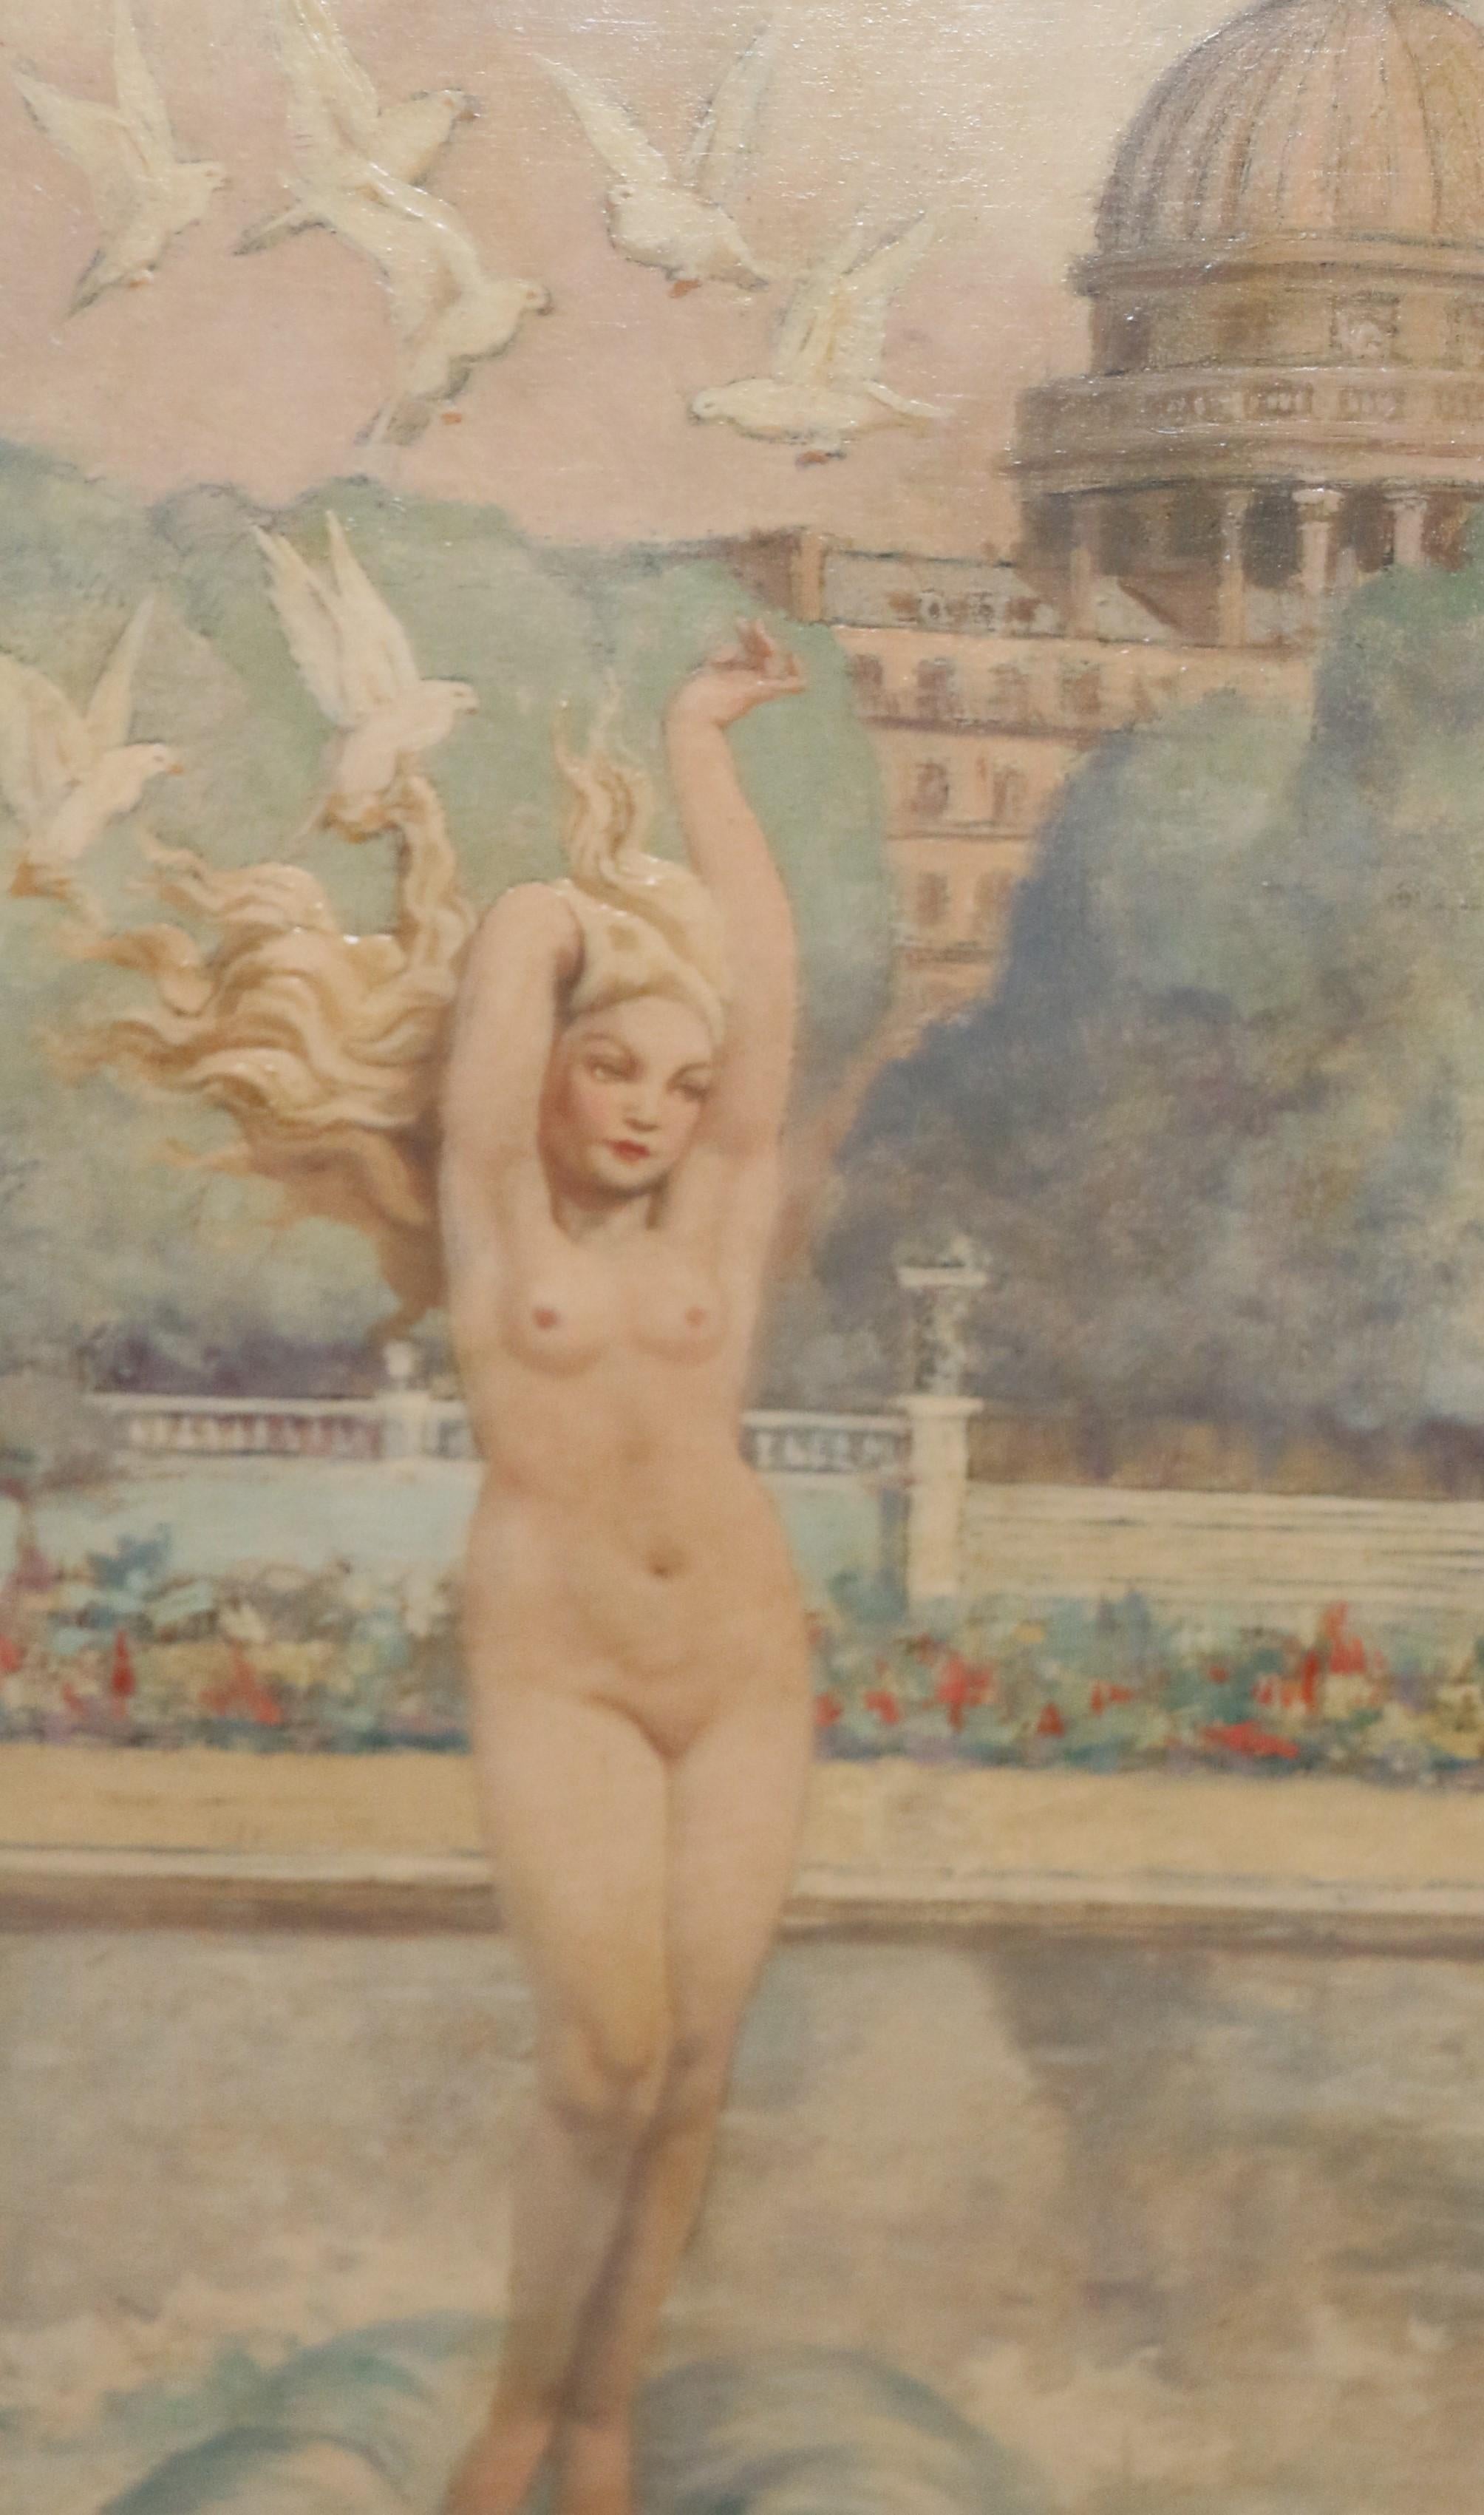 Exceptionnelle peinture à l'huile sur masonite de Raphael Delorme (1885-1962) représentant Vénus avec des colombes sur un beau fond de paysage de jardin. 
Signé en bas. Un certificat de Cecil, expert, sera remis à l'acheteur.
Il est encadré dans